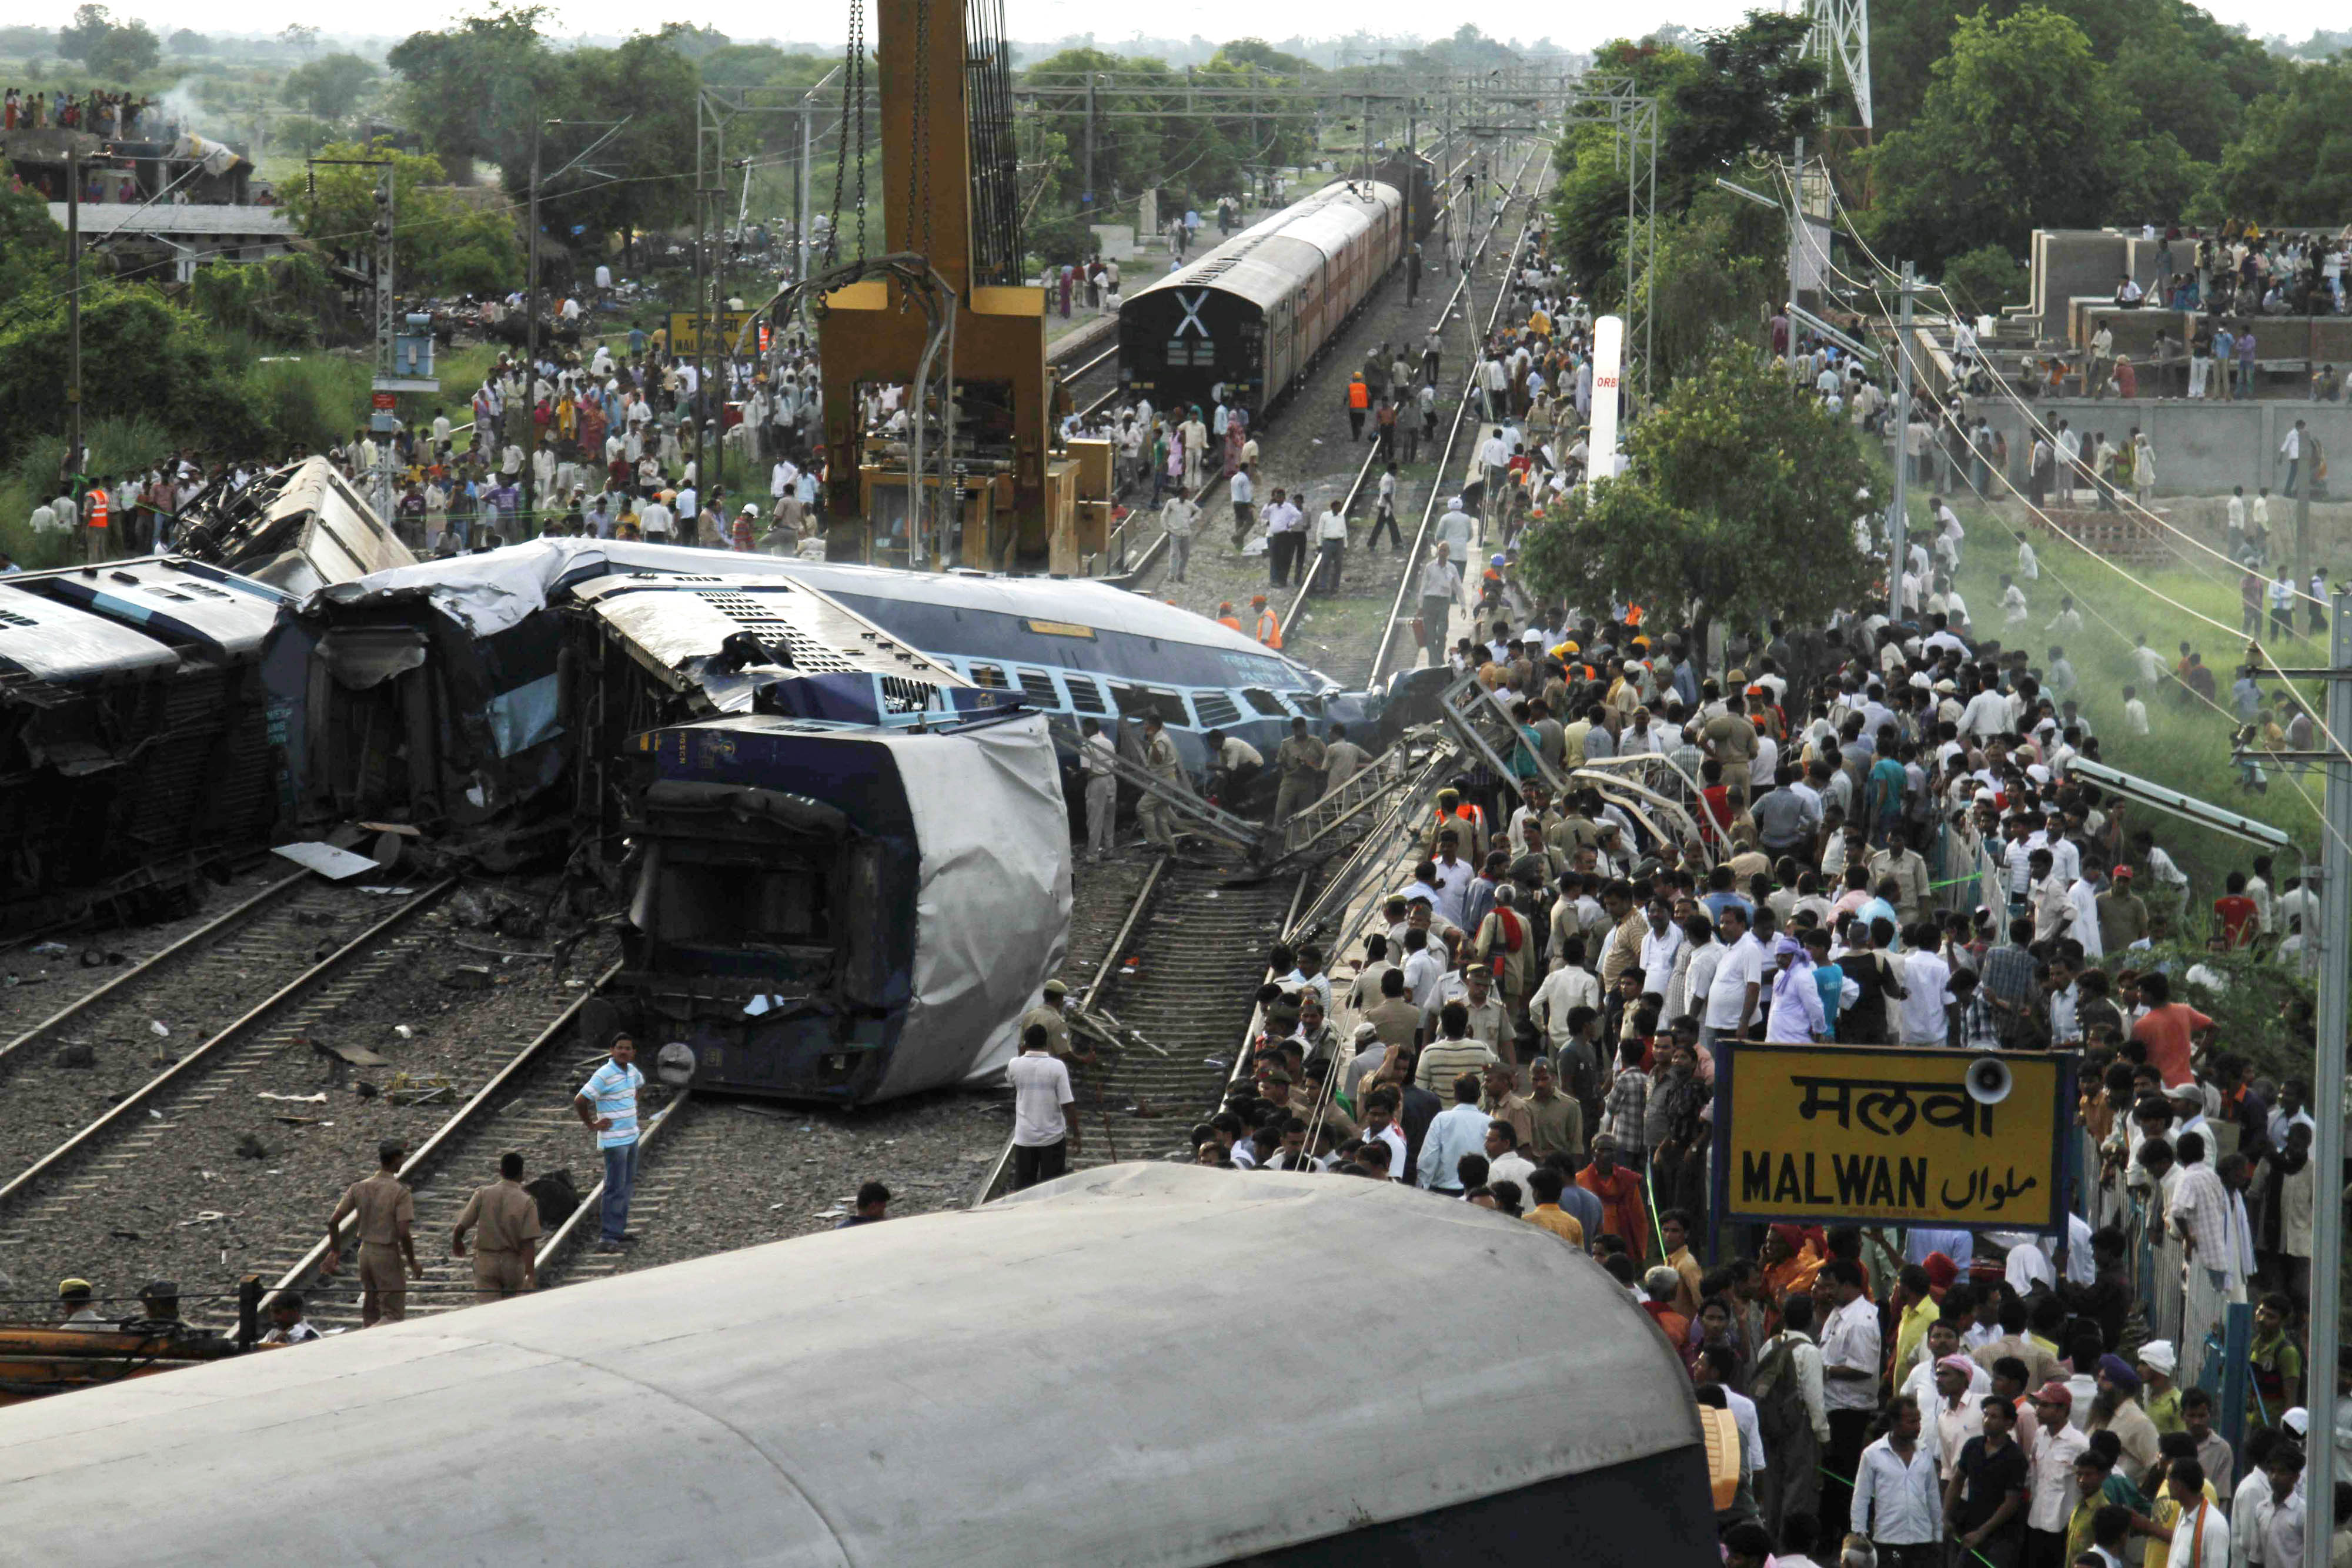 Ett tåg på med destination New Delhi spårade på söndagen ur. I nuläget beräknas 63 människor ha omkommit, en siffra som kan öka. Enligt nyhetsbyrån AFP finns två svenskar bland de döda (en tredje svensk ska vara skadad), uppgifter som ännu inte nått UD be